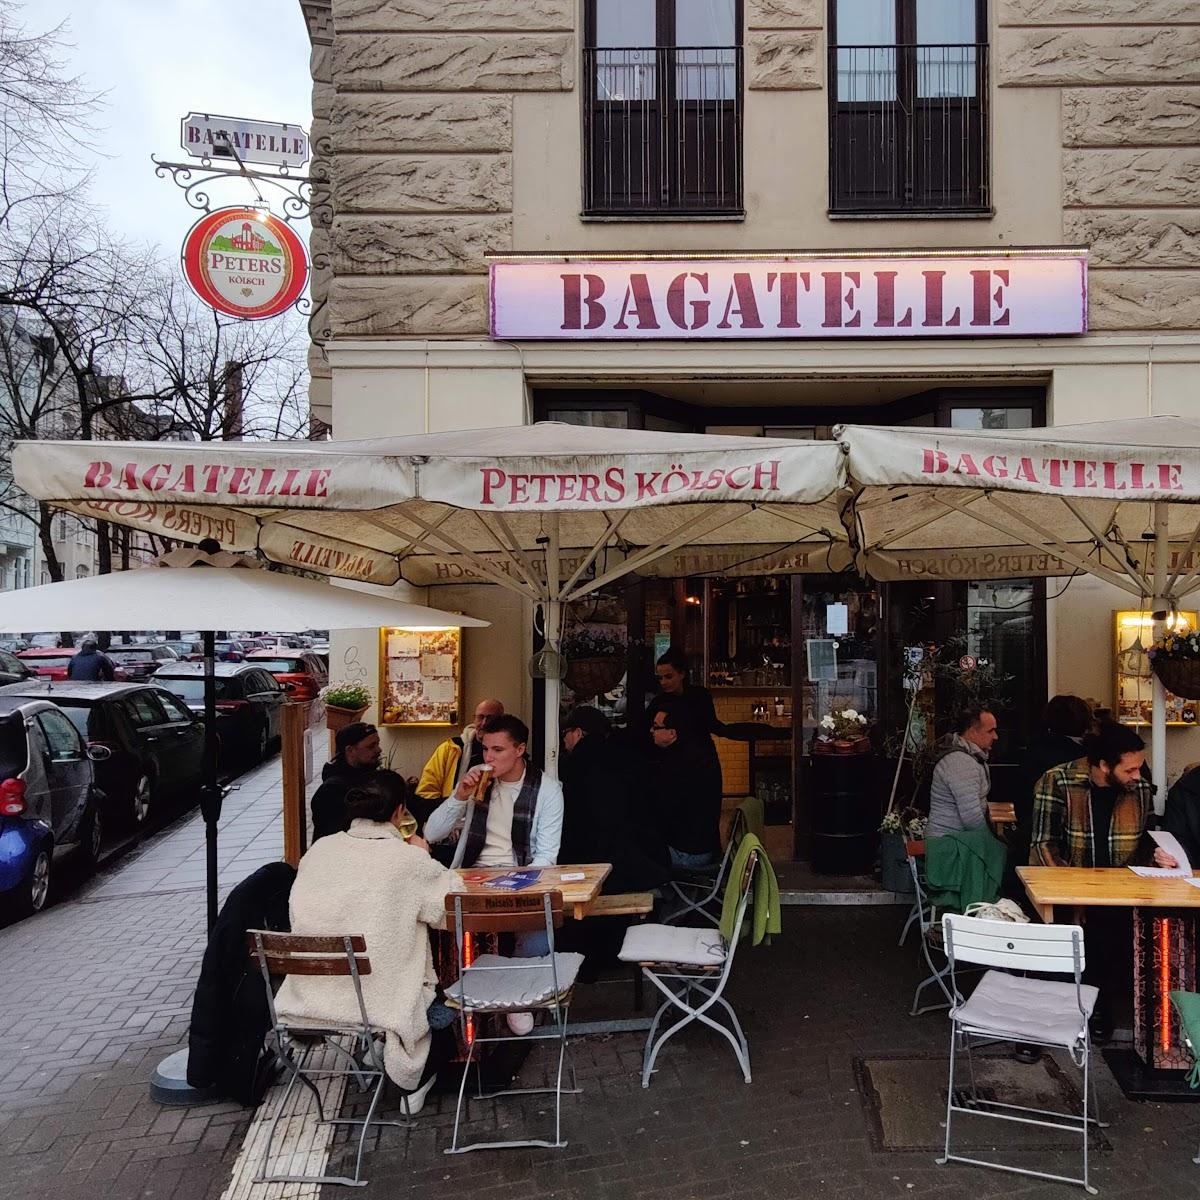 Restaurant "Bagatelle" in Köln